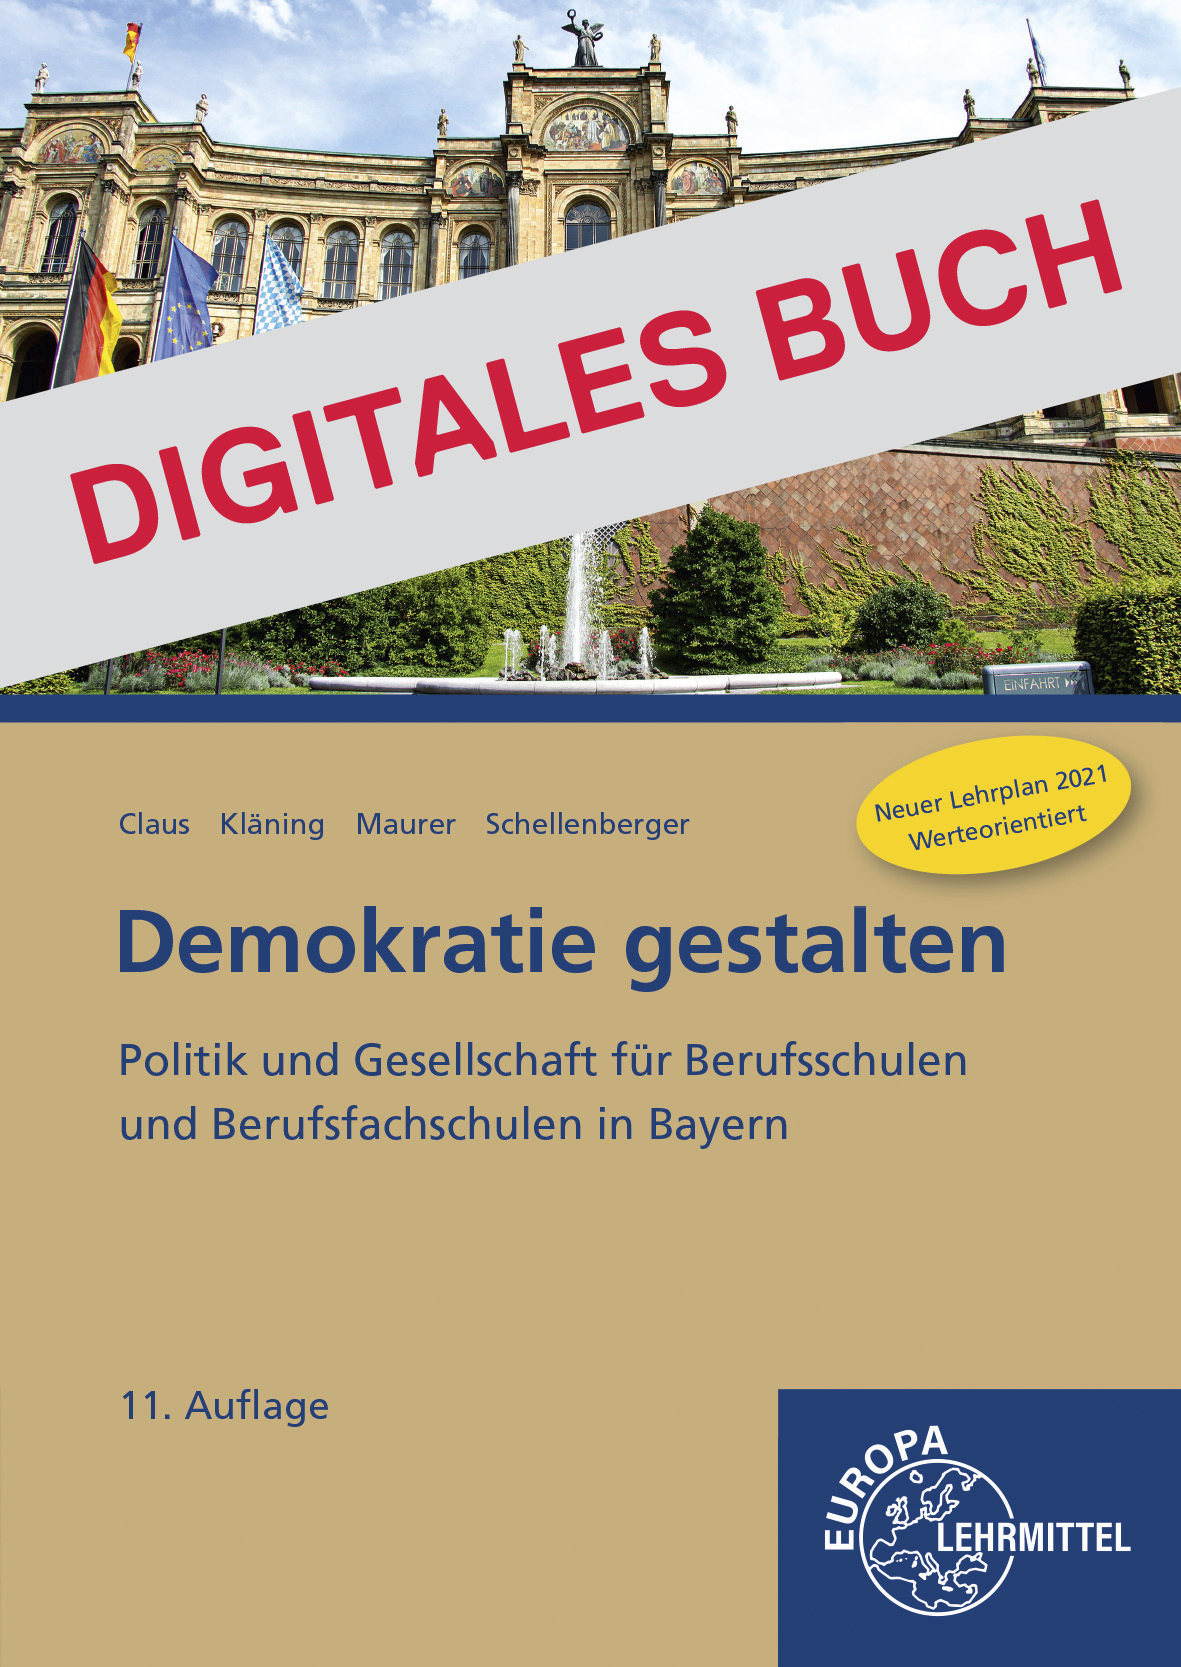 Demokratie gestalten Bayern - Digitales Buch